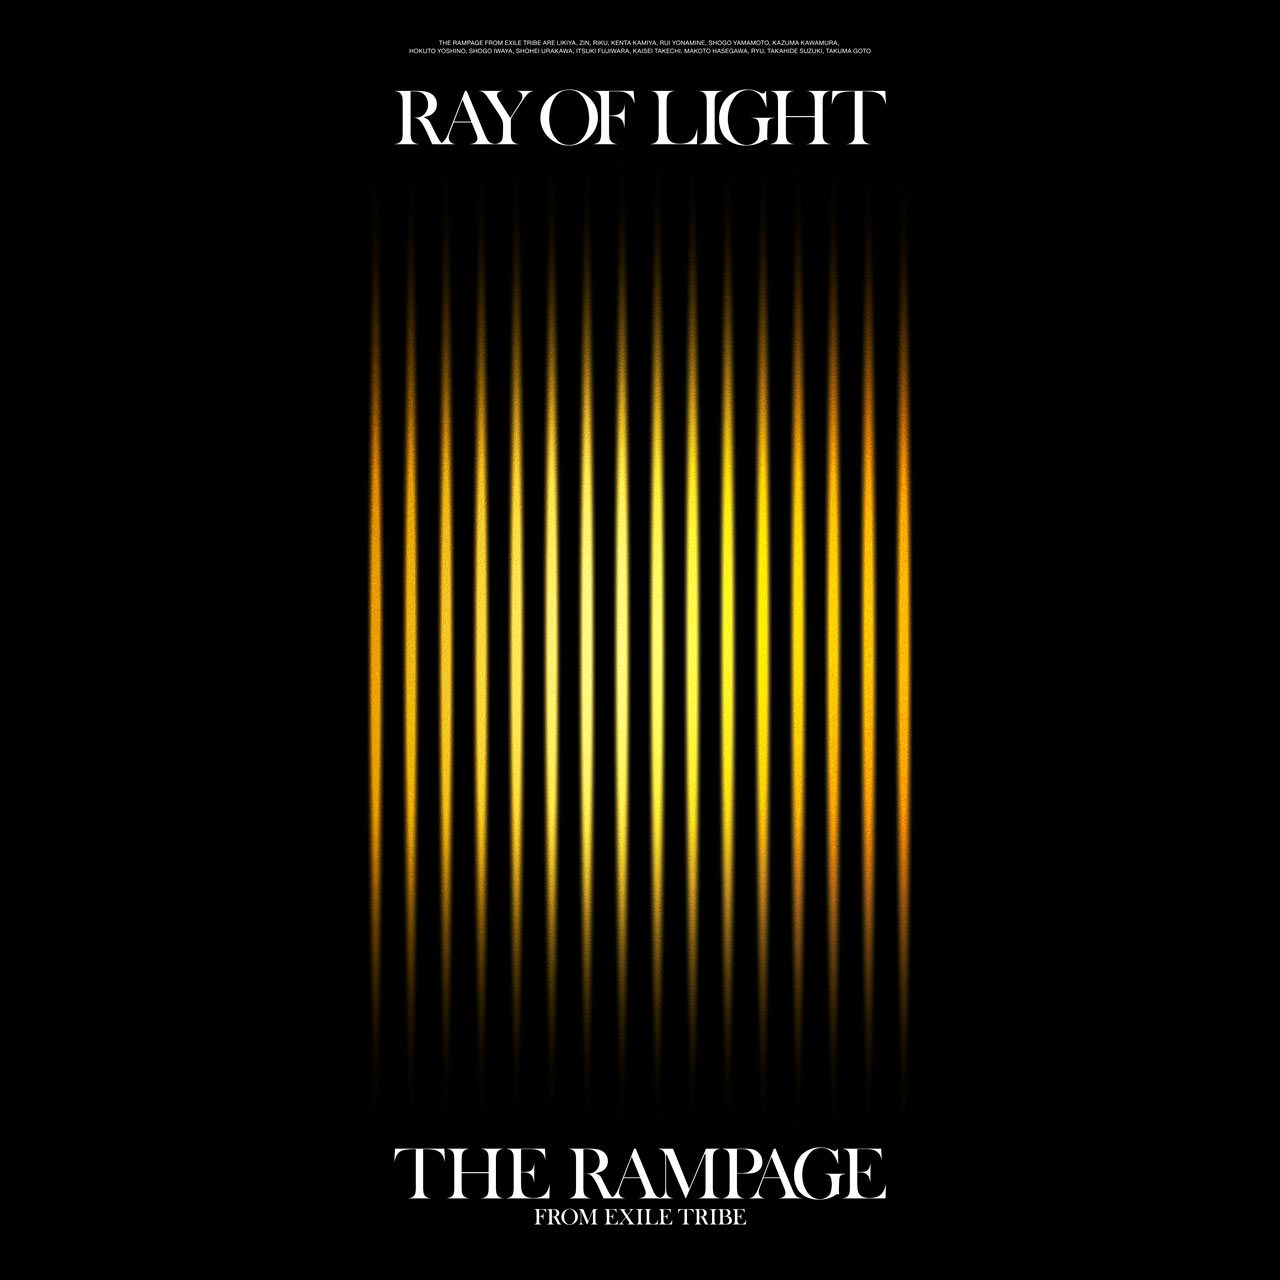 軽量な折り畳み自転車 RAY OF LIGHT(3CD+2Blu-ray) the rampage 通販